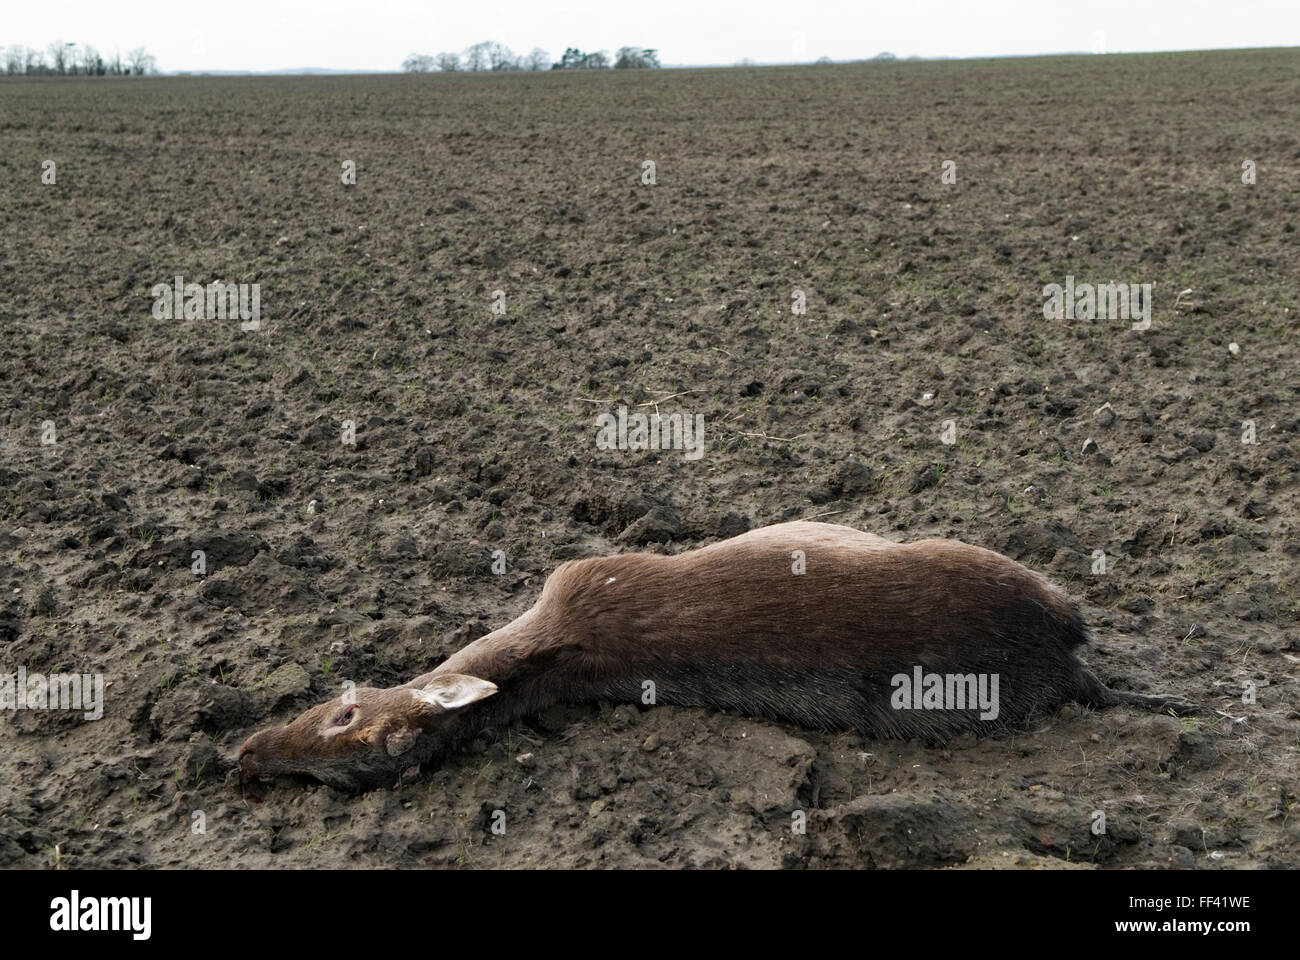 Roe Deer tot Landschaft Oxfordshire, wahrscheinlich getötet, von einem vorbeifahrenden Auto getroffen und dann in diesem nahe gelegenen Feld gestaffelt und starb. UK 2016 HOMER SYKES Stockfoto